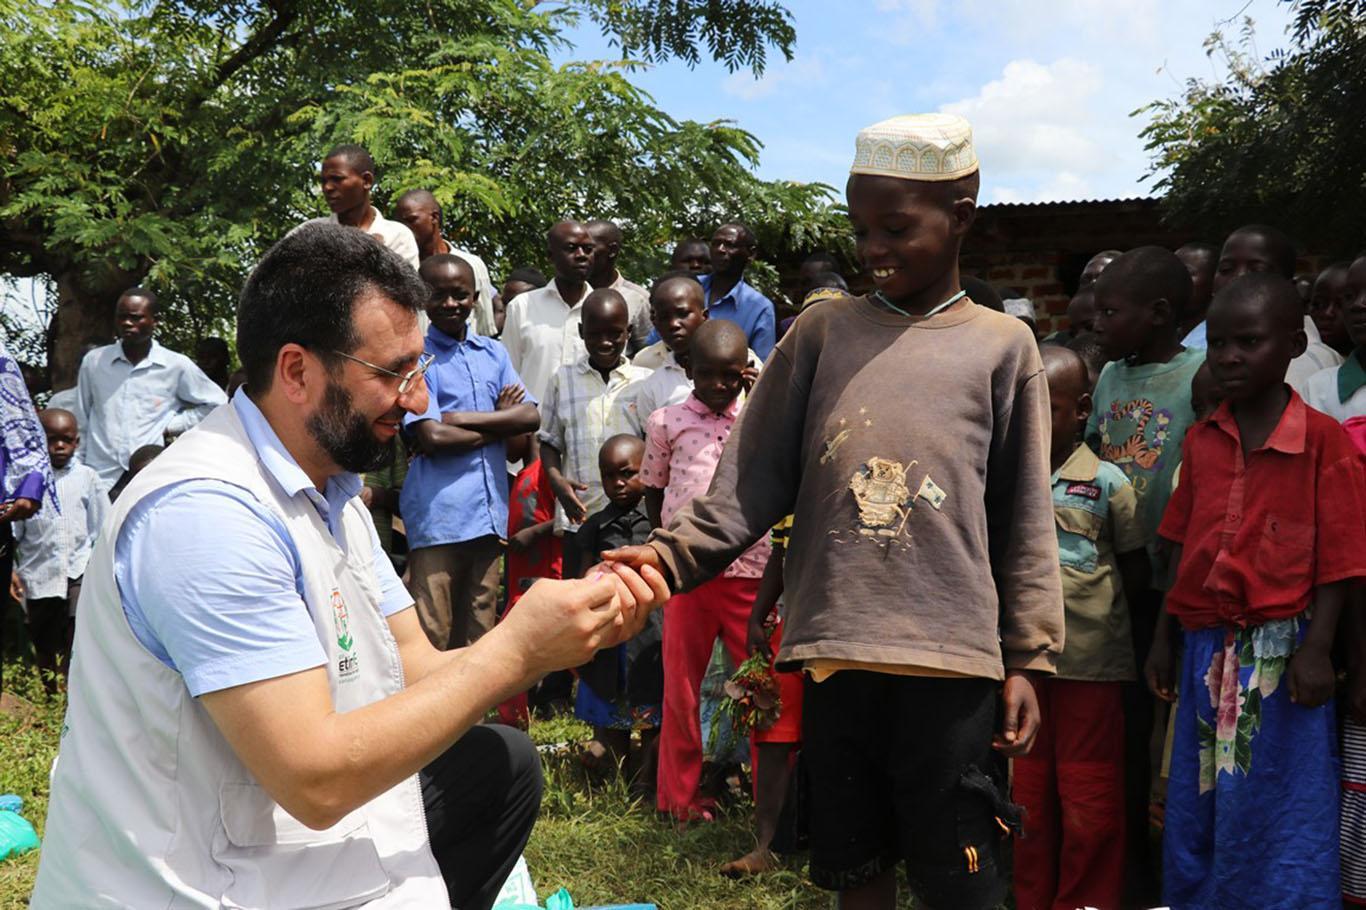 جمعية "يد اليتيم" توزع الحزمات الغذائية على الفقراء في أوغندا